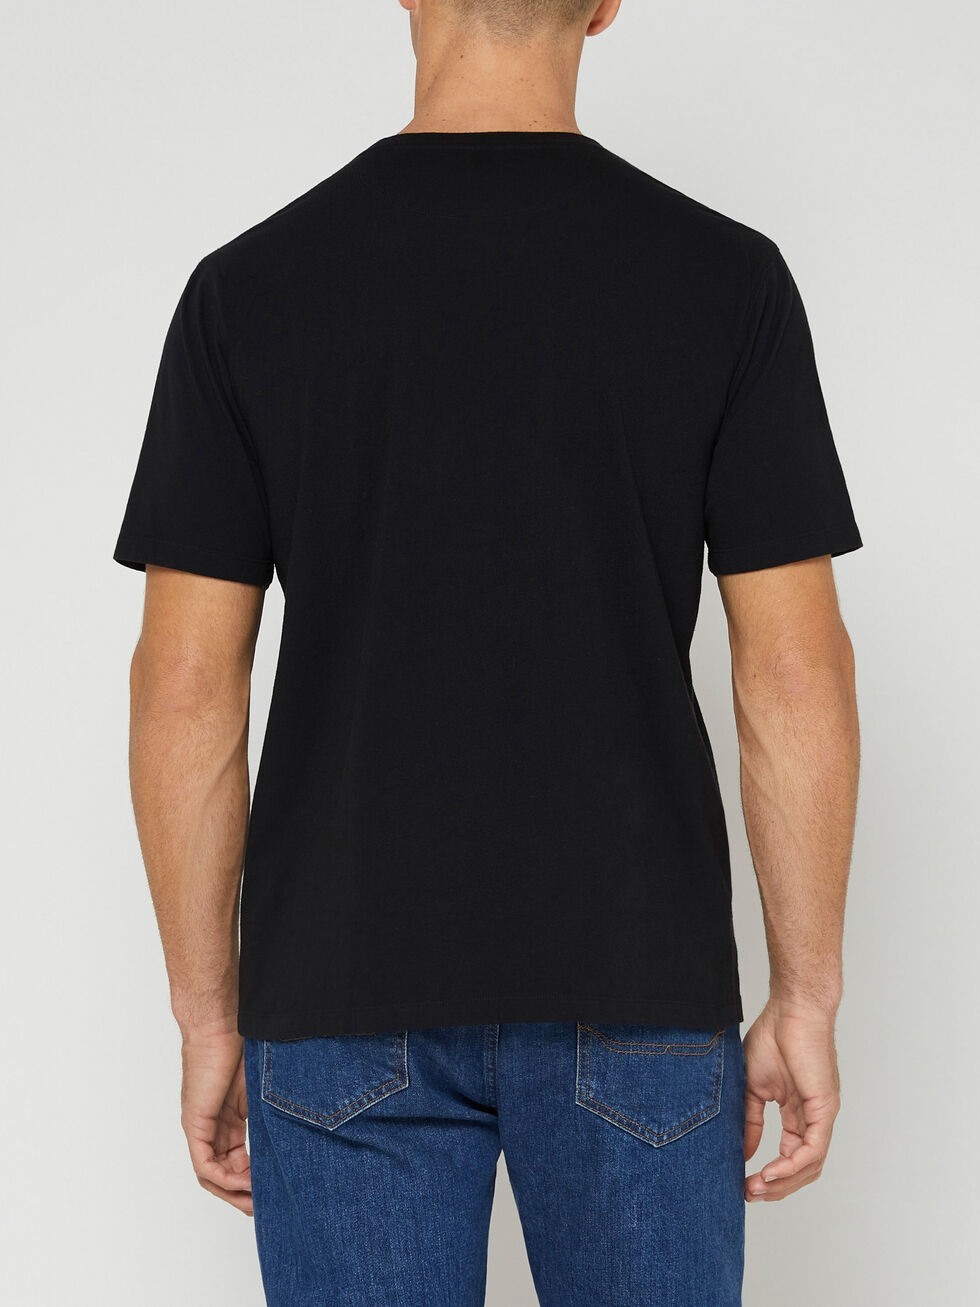 RM Williams Parson T-Shirt Black | Port Phillip Shop